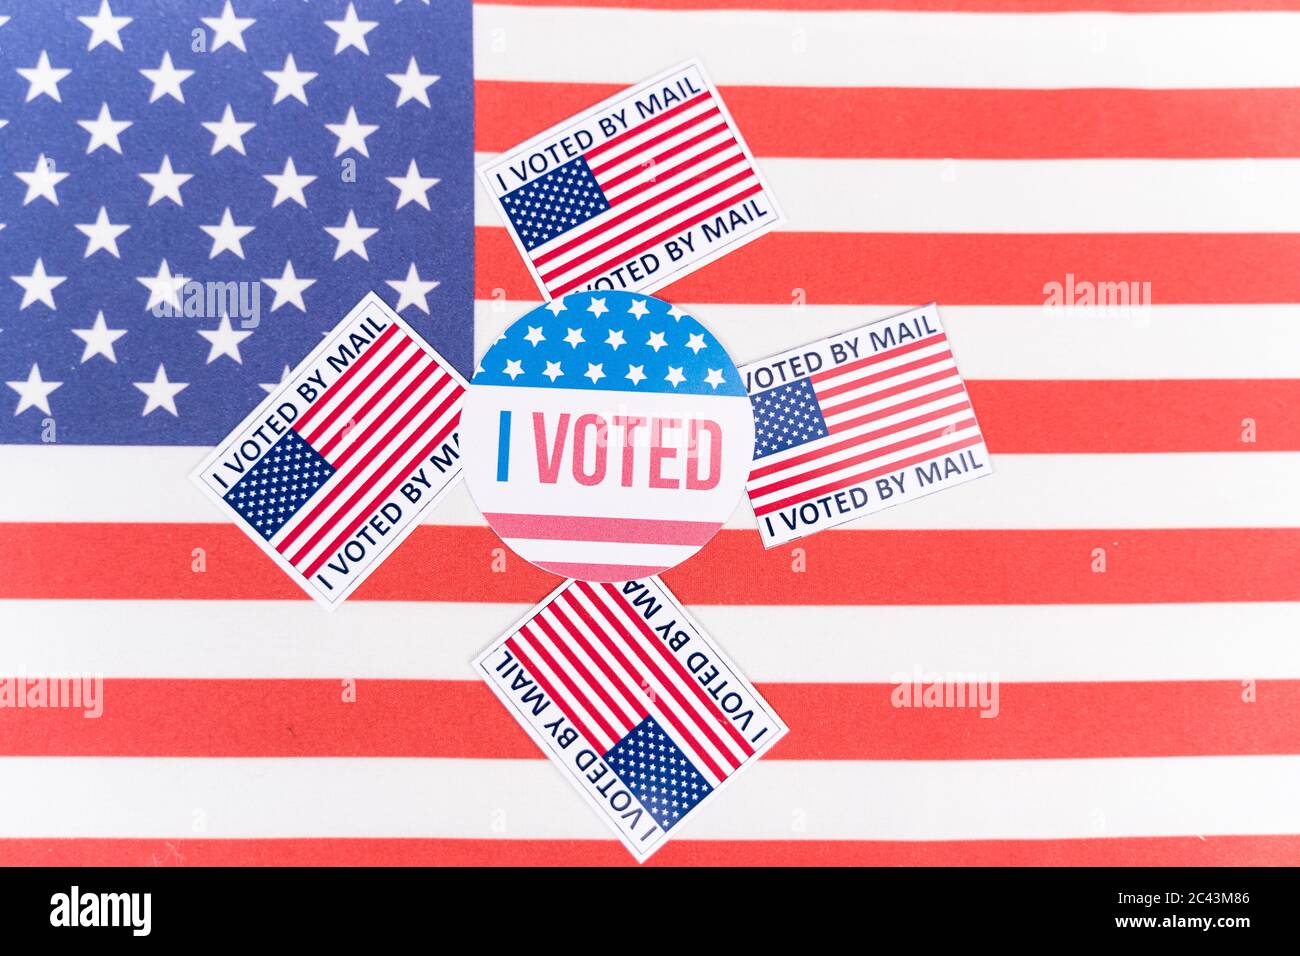 Ich habe meine Mail Sticker auf US-Flagge abgestimmt - Konzept der Briefwahl während der amerikanischen Wahlen. Stockfoto